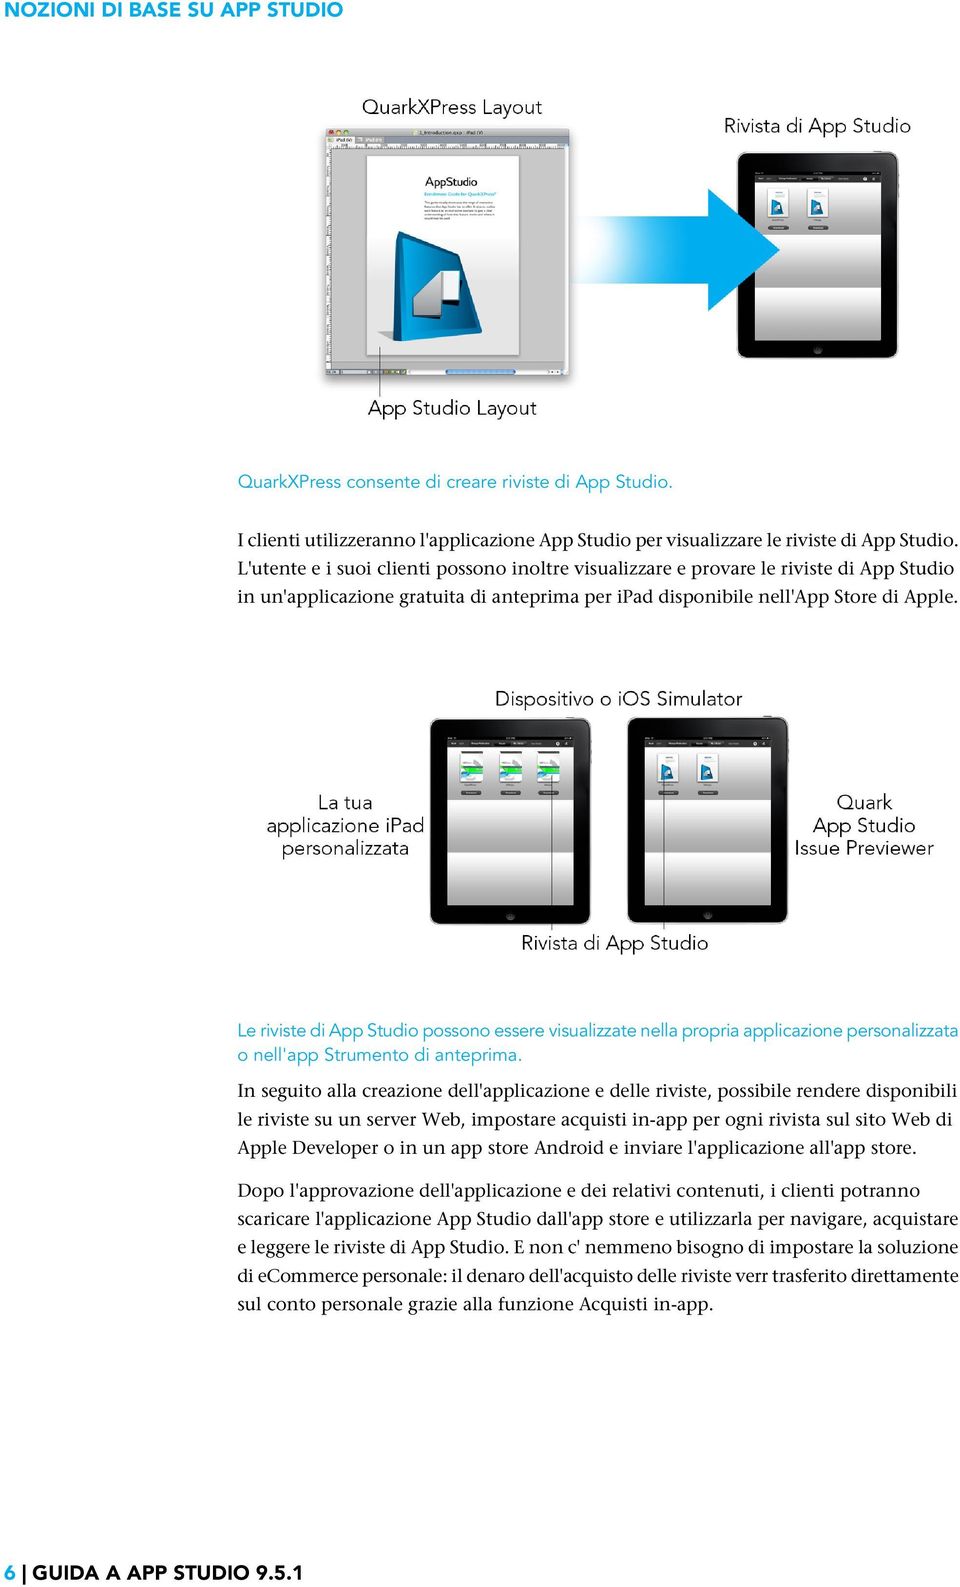 Le riviste di App Studio possono essere visualizzate nella propria applicazione personalizzata o nell'app Strumento di anteprima.